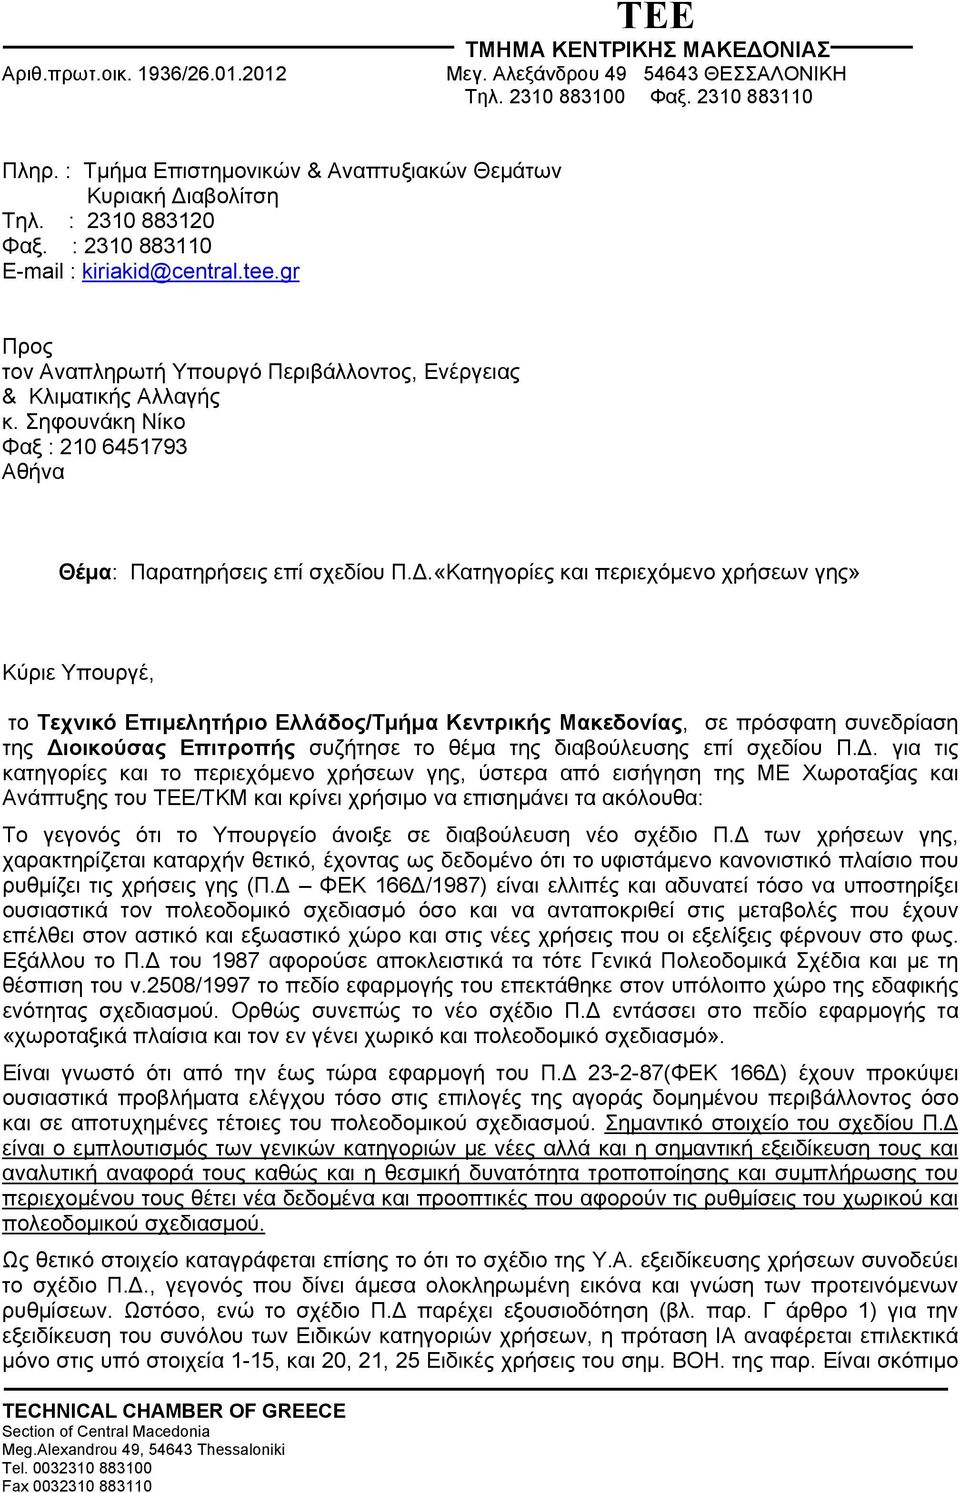 «Κατηγορίες και περιεχόμενο χρήσεων γης» Κύριε Υπουργέ, το Τεχνικό Επιμελητήριο Ελλάδος/Τμήμα Κεντρικής Μακεδονίας, σε πρόσφατη συνεδρίαση της Διοικούσας Επιτροπής συζήτησε το θέμα της διαβούλευσης